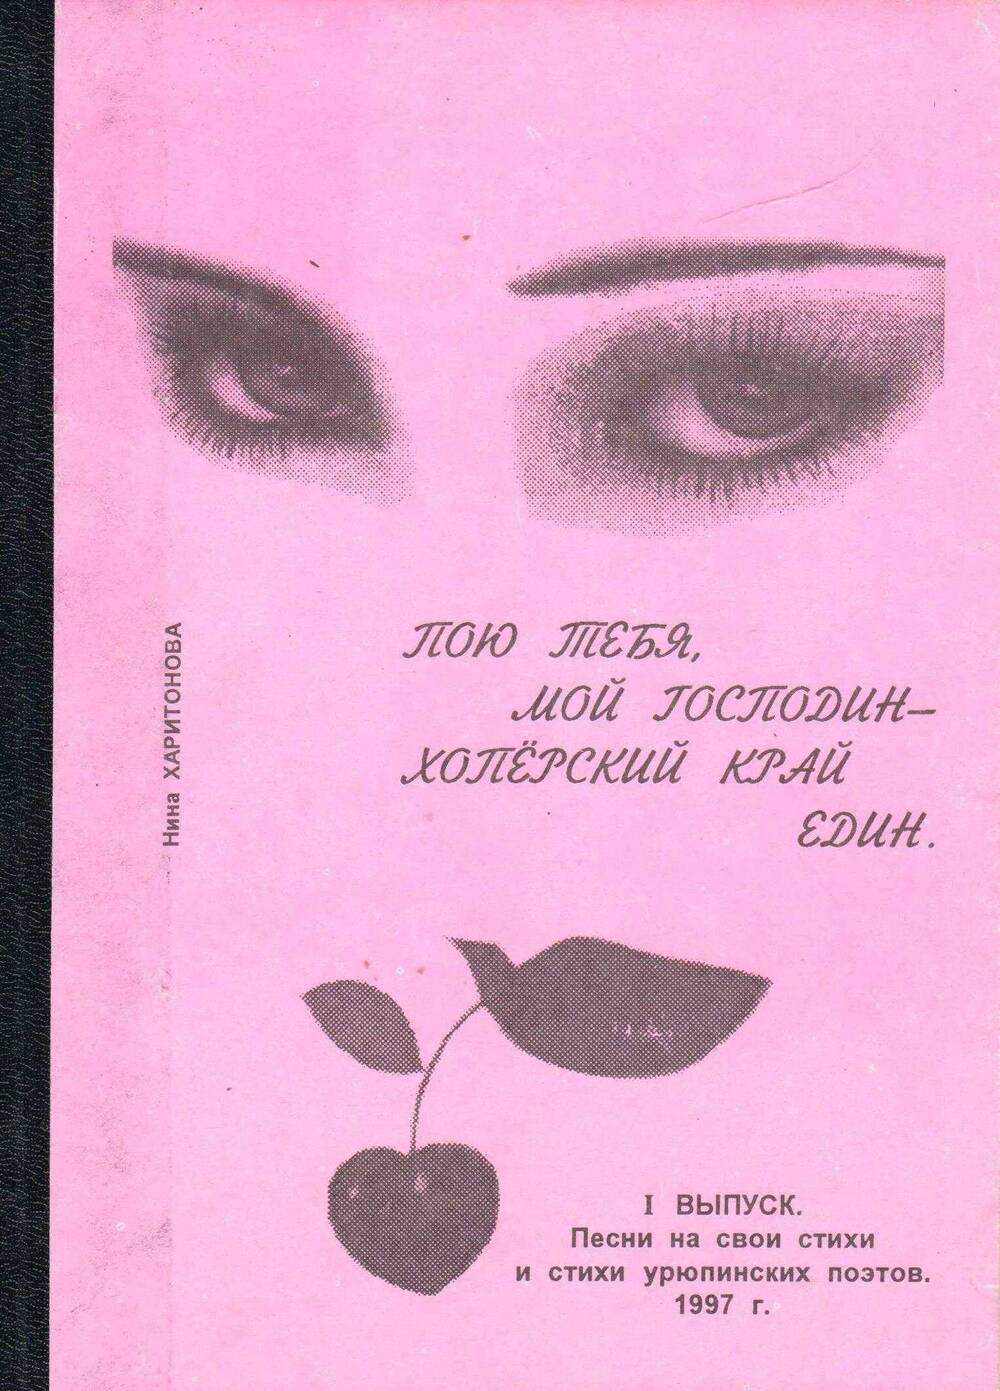 Н. А. Харитонова. Пою тебя, мой Господин - Хопёрский край един, г. Урюпинск, 1997 г. (песни на стихи урюпинских поэтов).